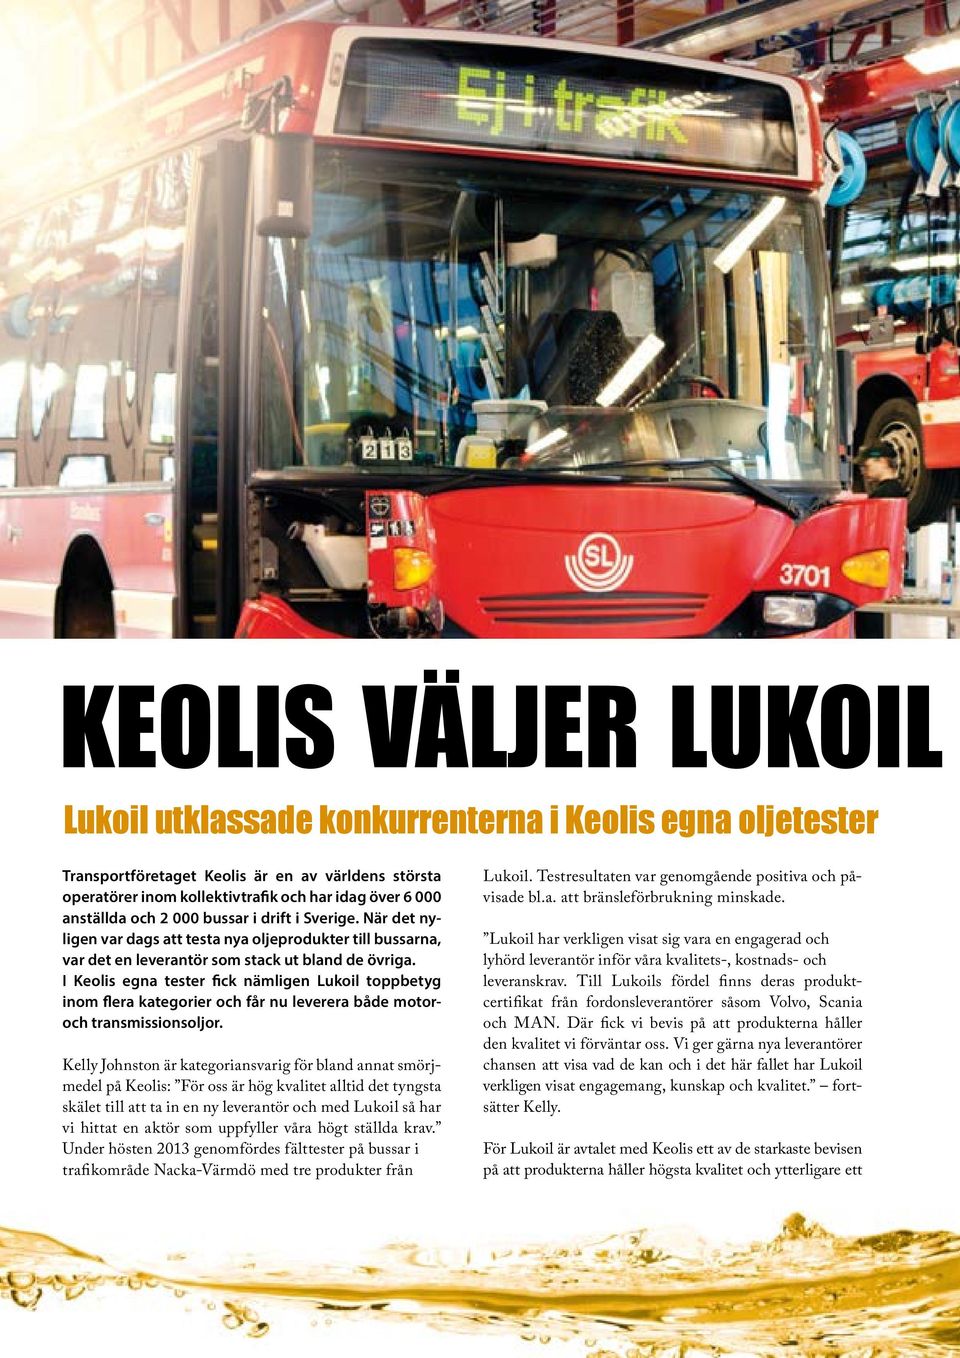 I Keolis egna tester fick nämligen Lukoil toppbetyg inom flera kategorier och får nu leverera både motoroch transmissionsoljor.